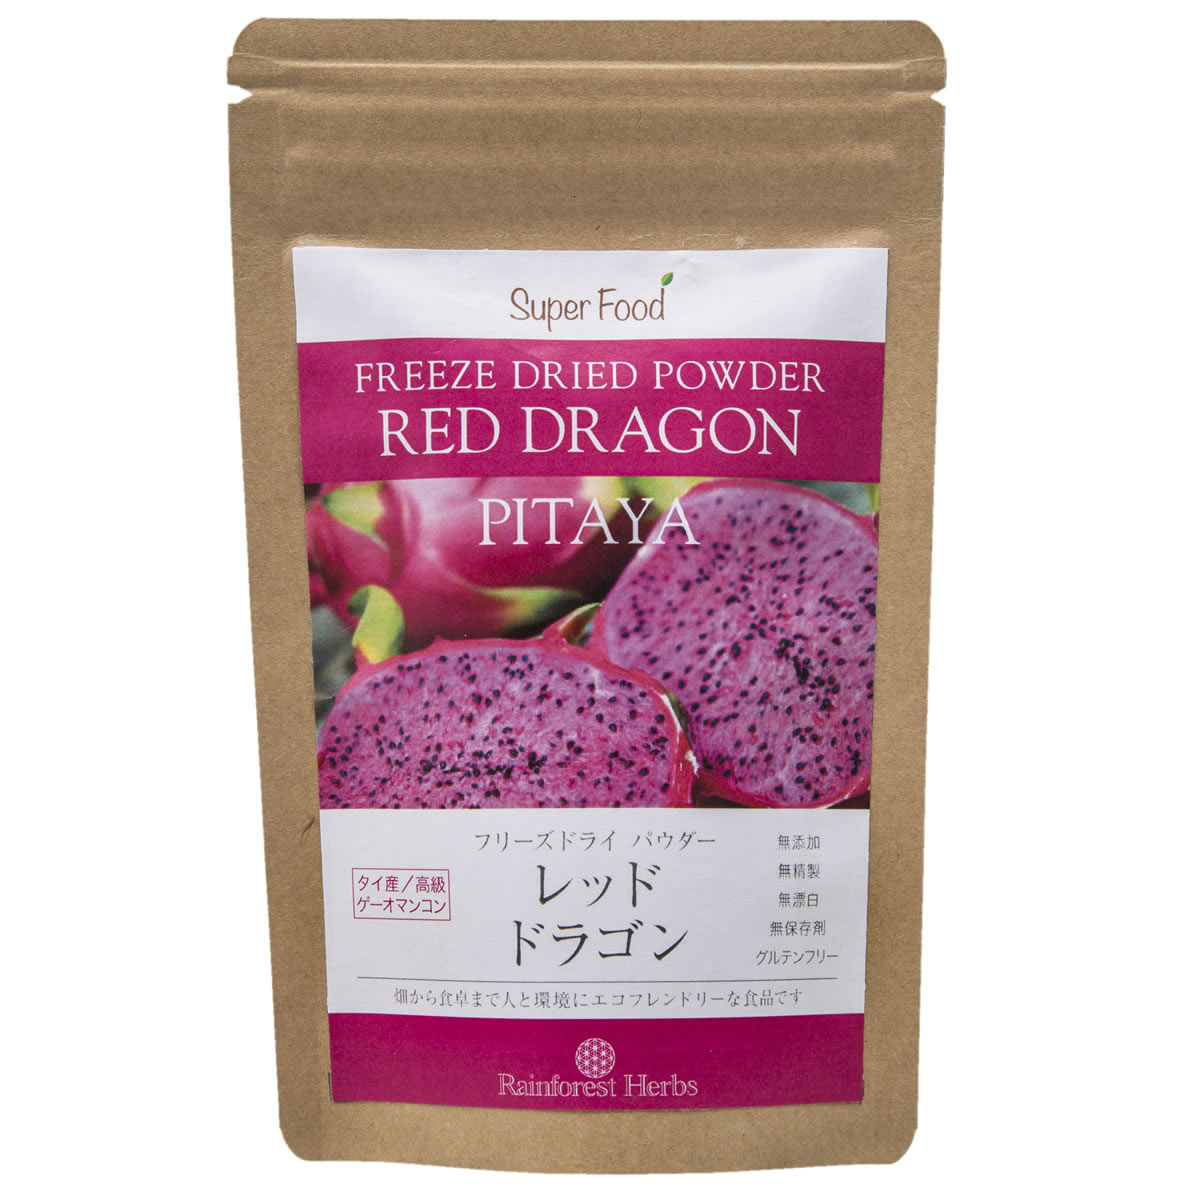 レッドドラゴンフルーツ ピタヤパウダー 60g 1袋 フリーズドライ タイ産 Red Dragon Fruit Freeze Drie..